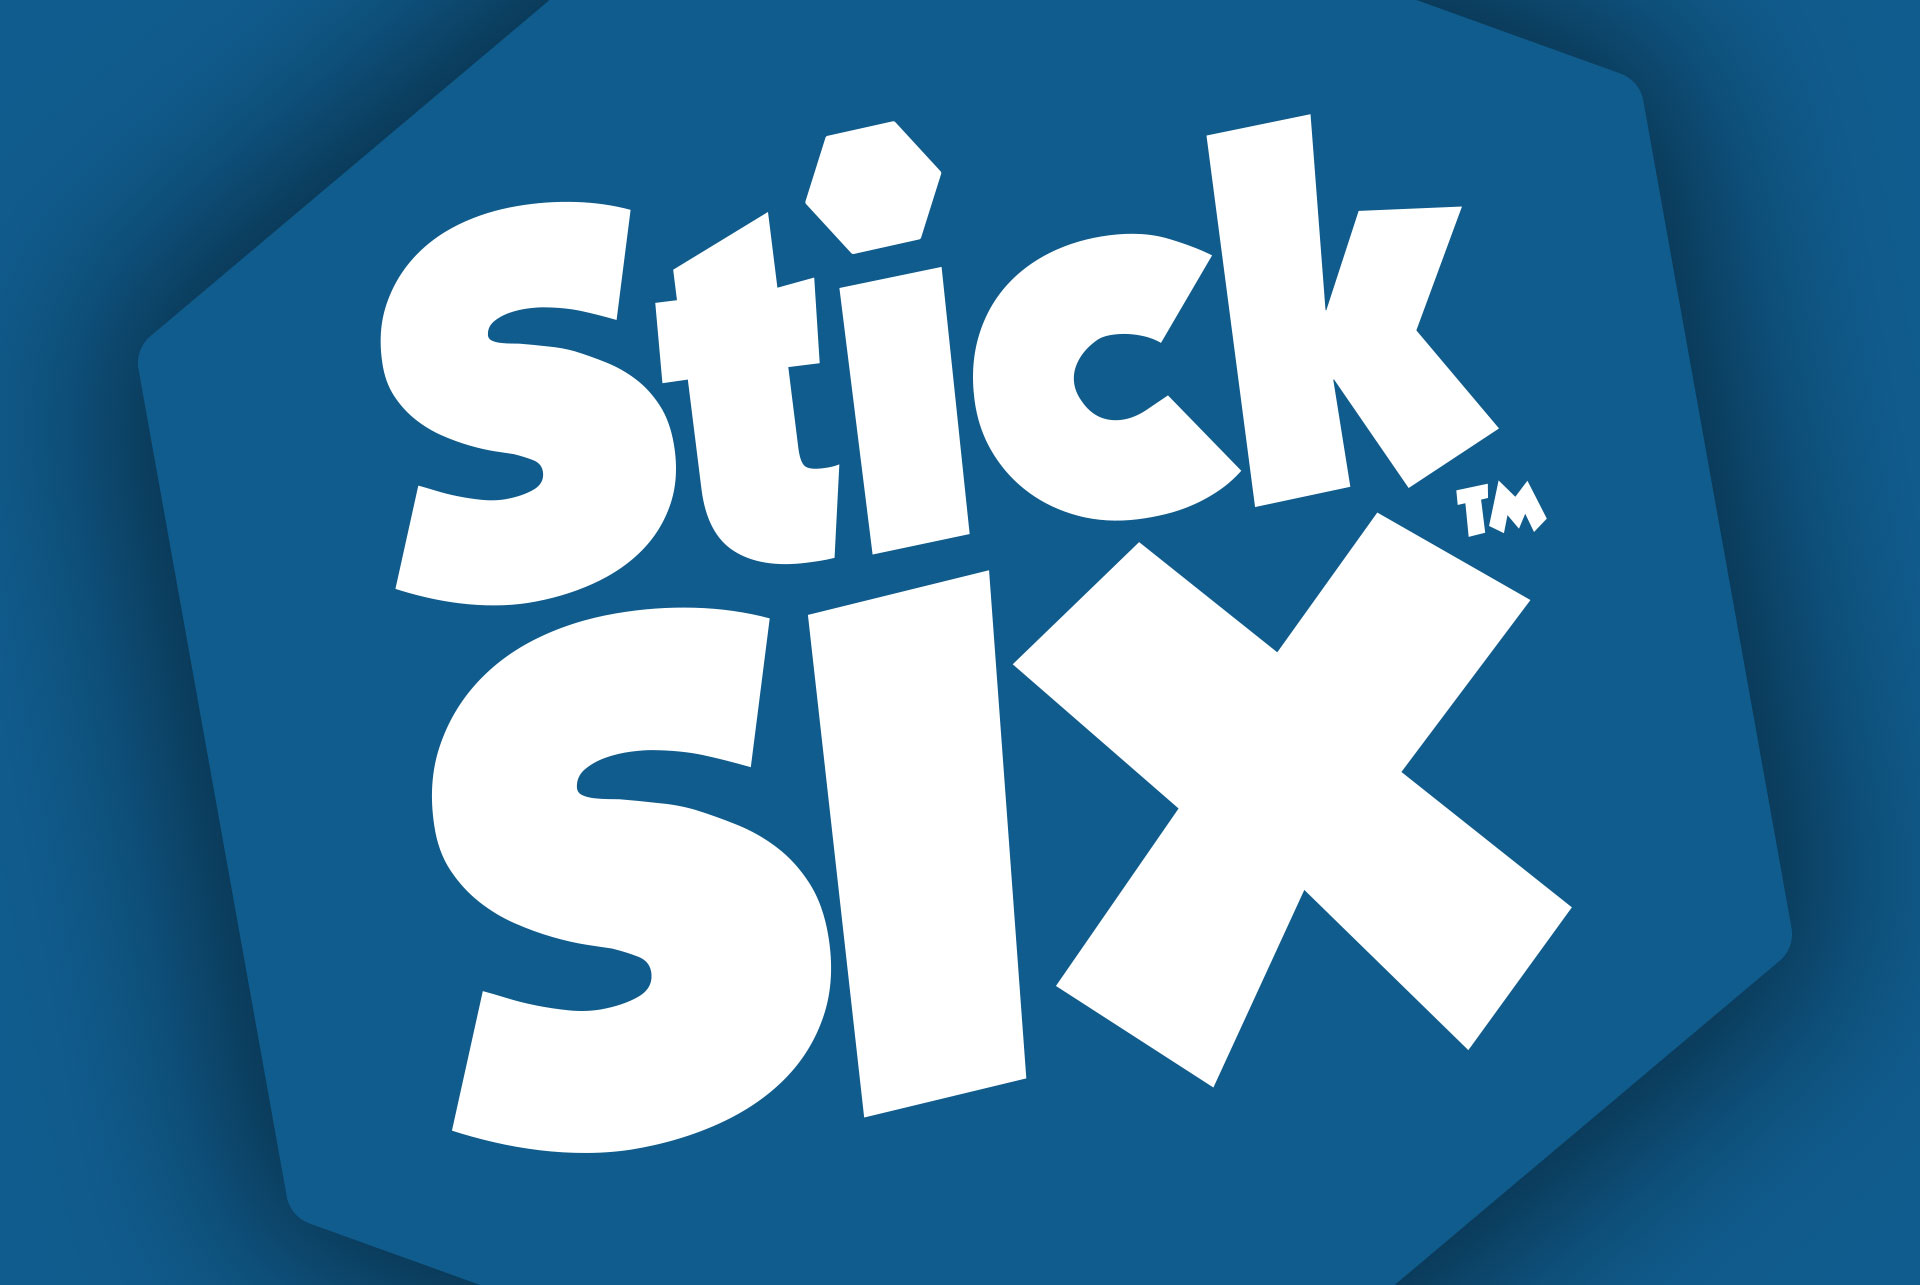 StickSix™